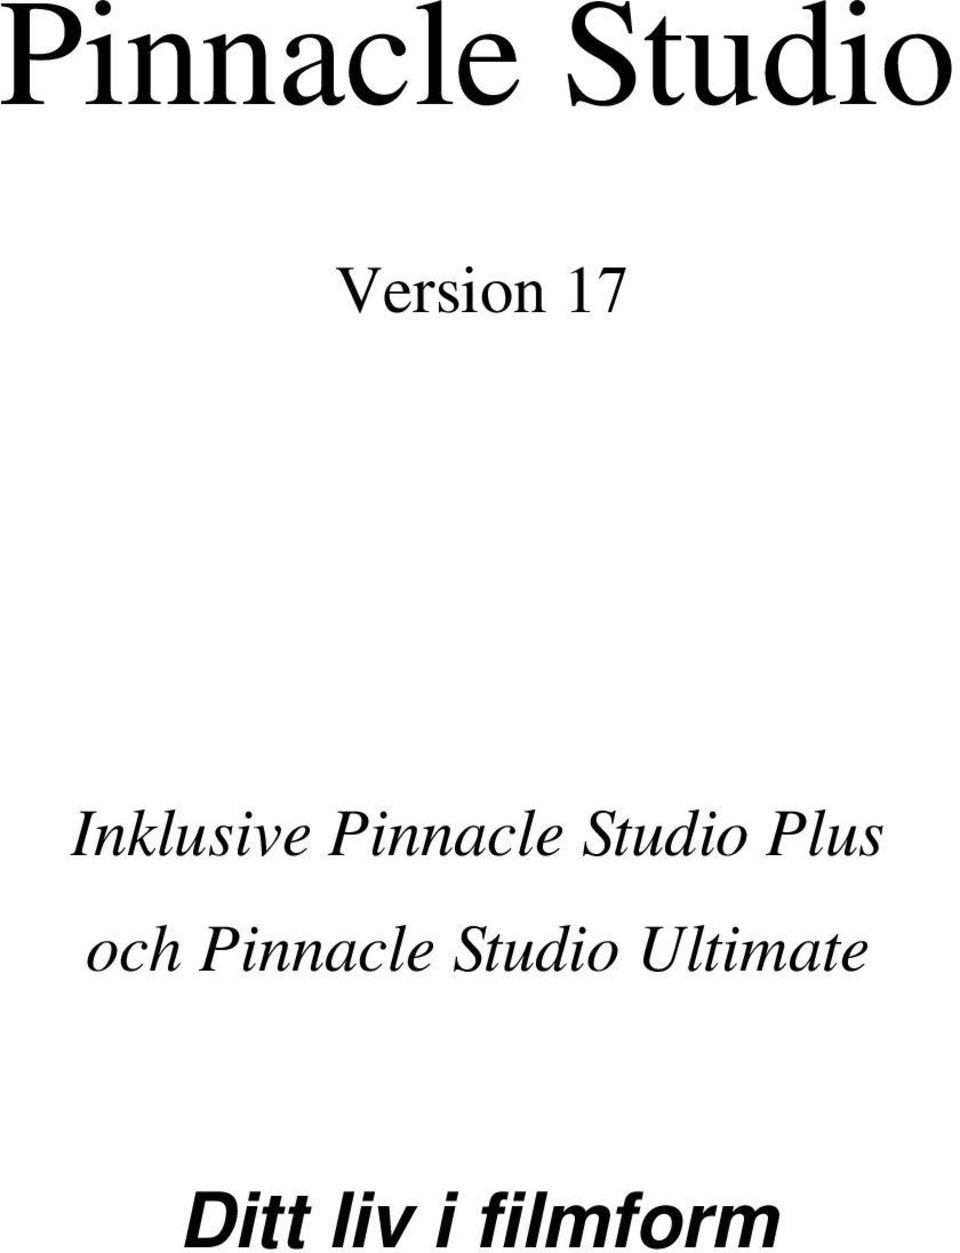 Plus och Pinnacle Studio